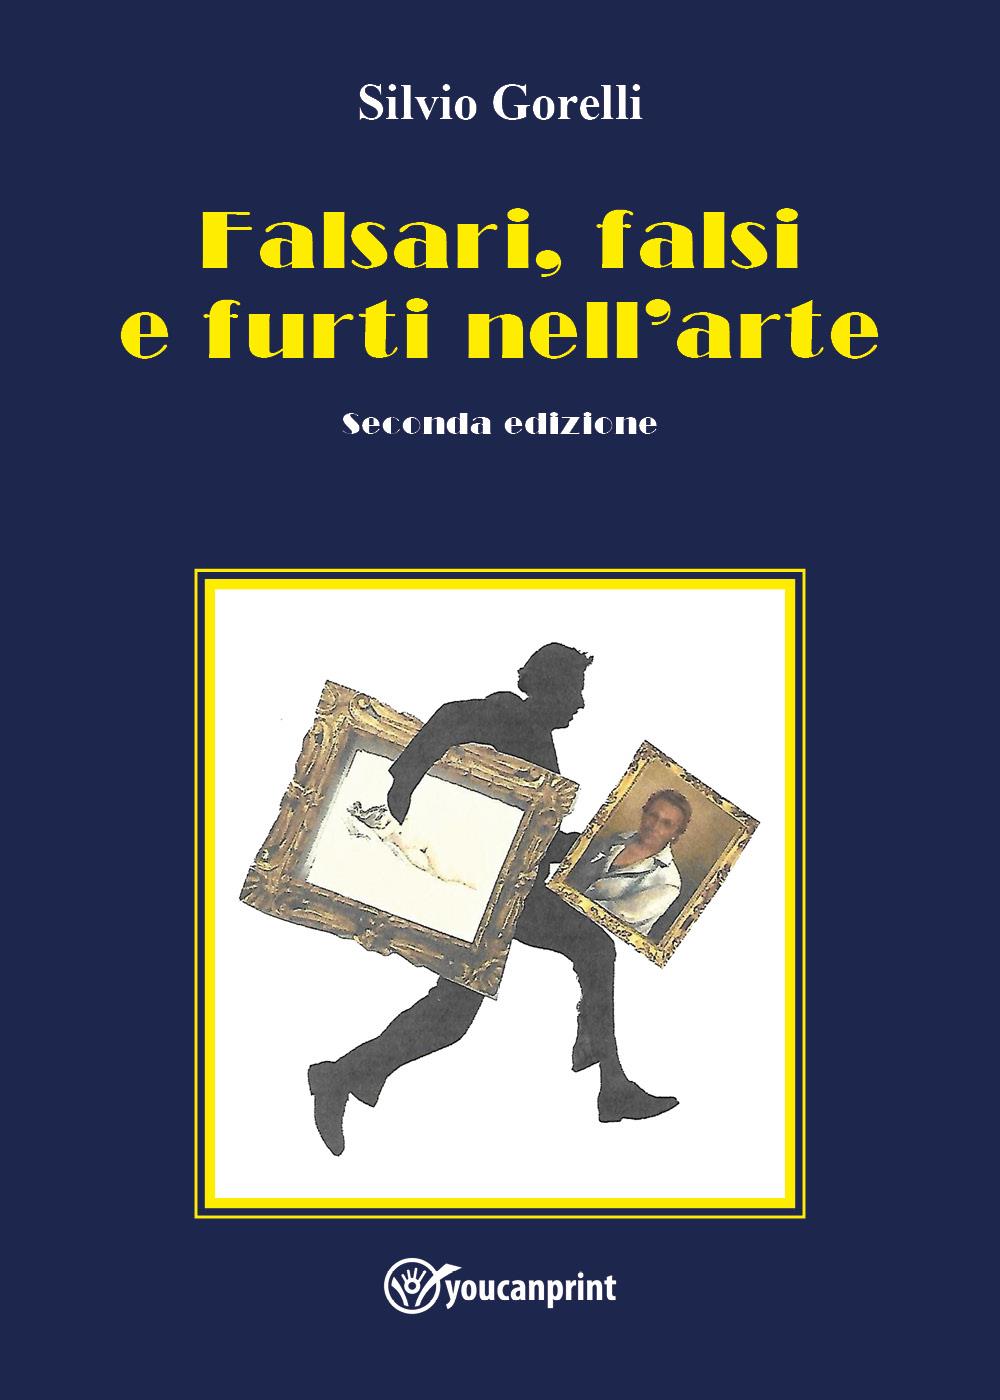 Falsari, falsi e furti nell'arte - seconda edizione